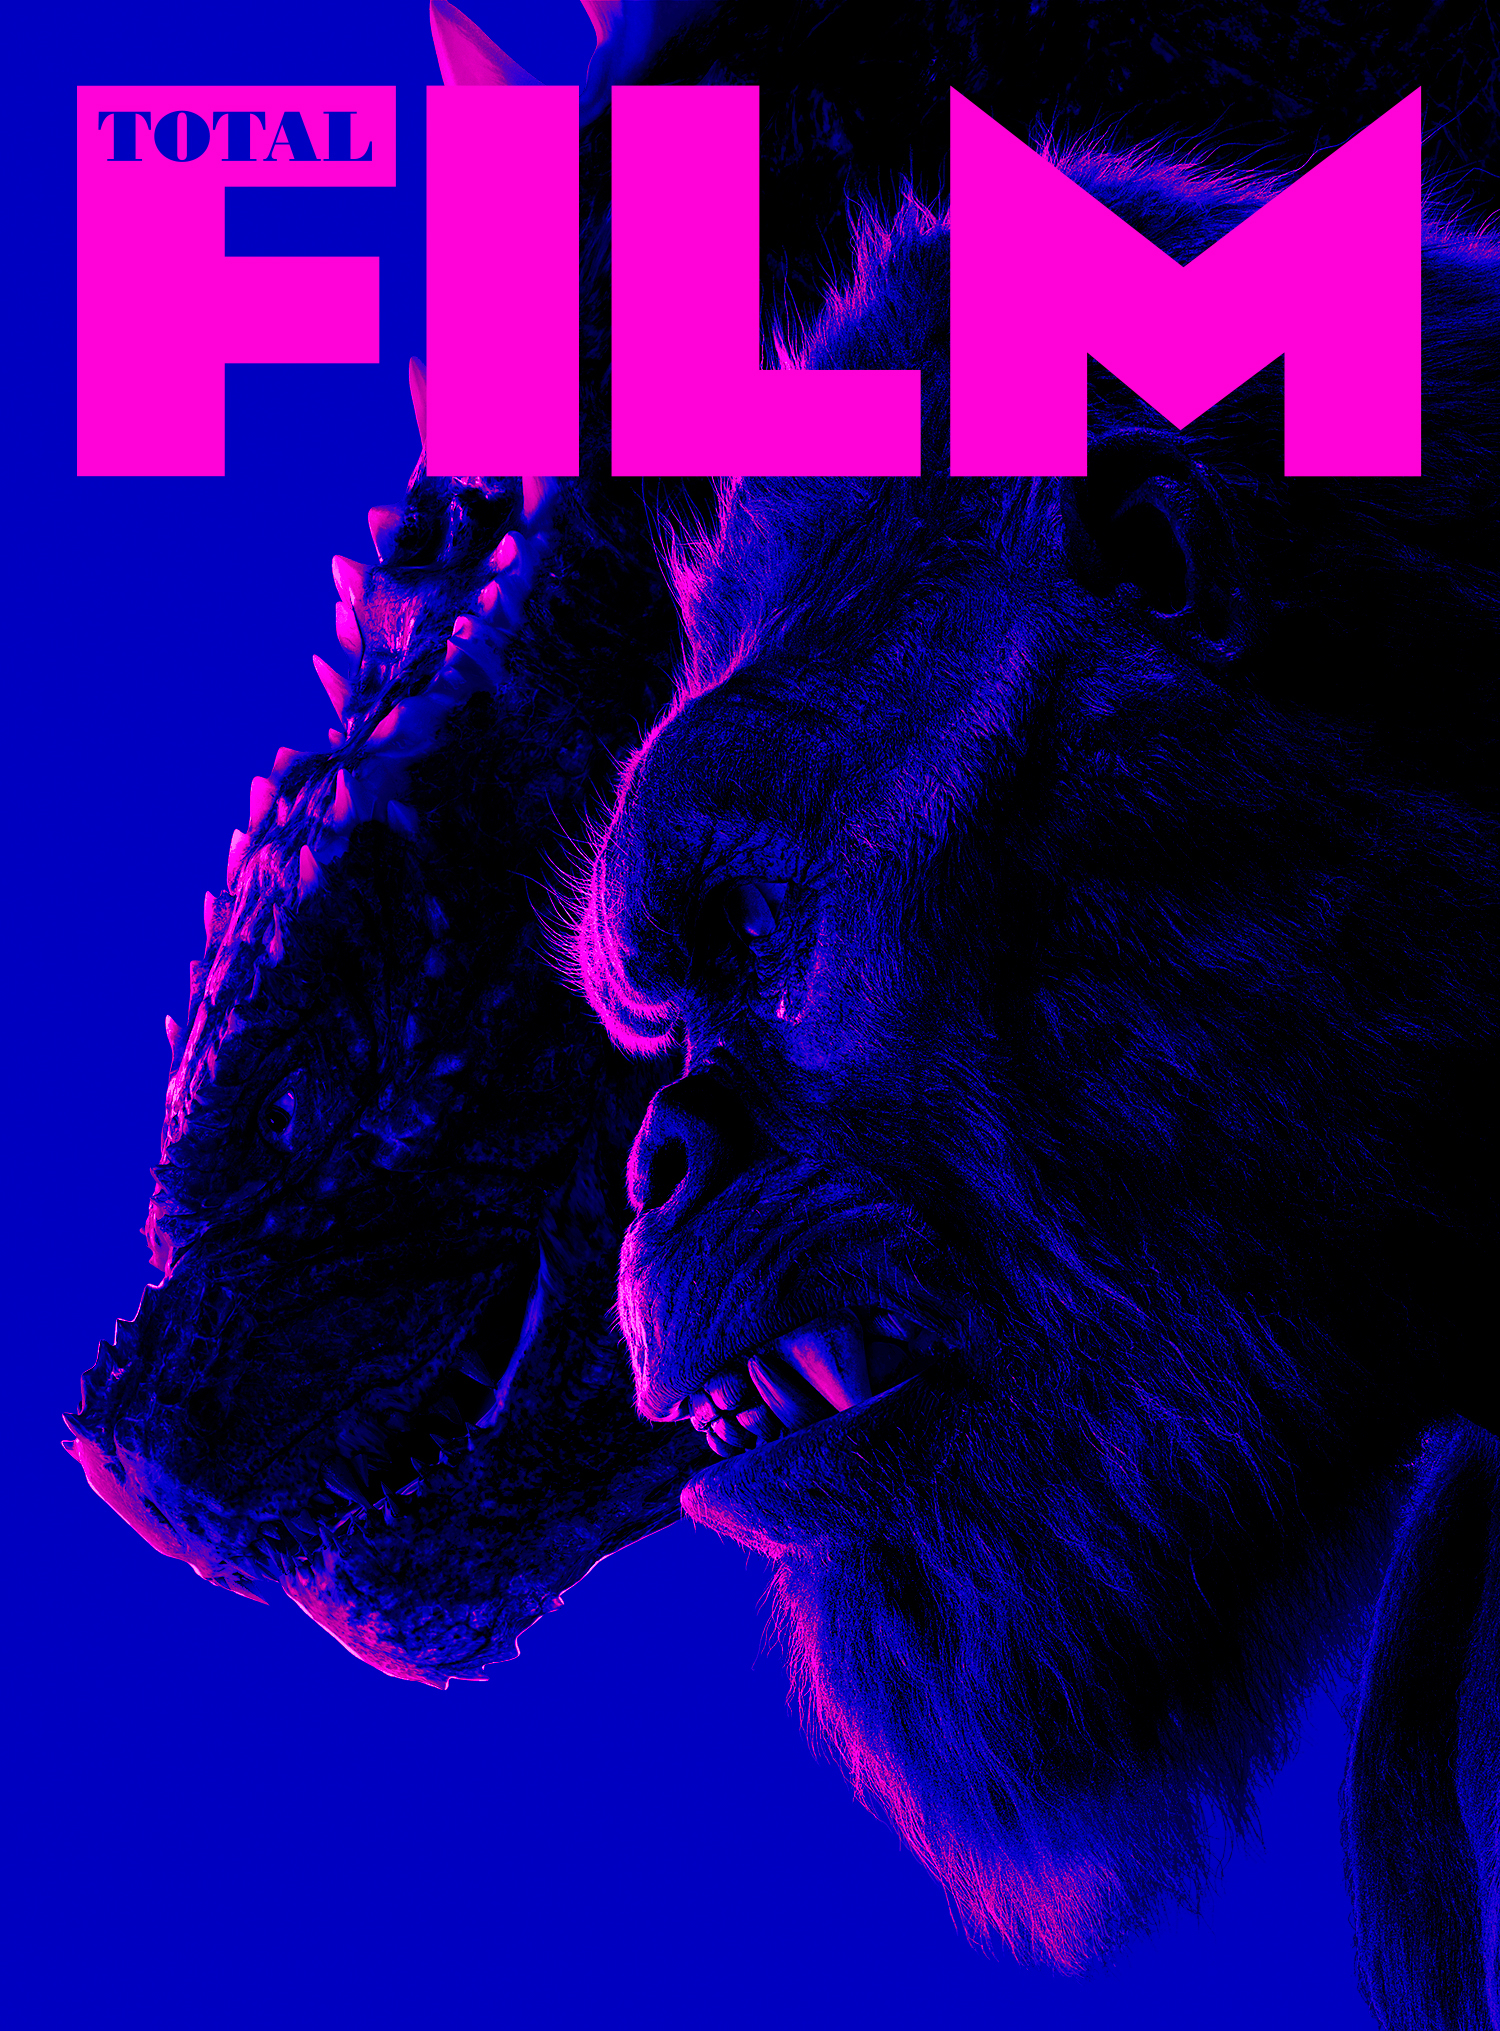 Obálka předplatného Godzilla x Kong od Total Film